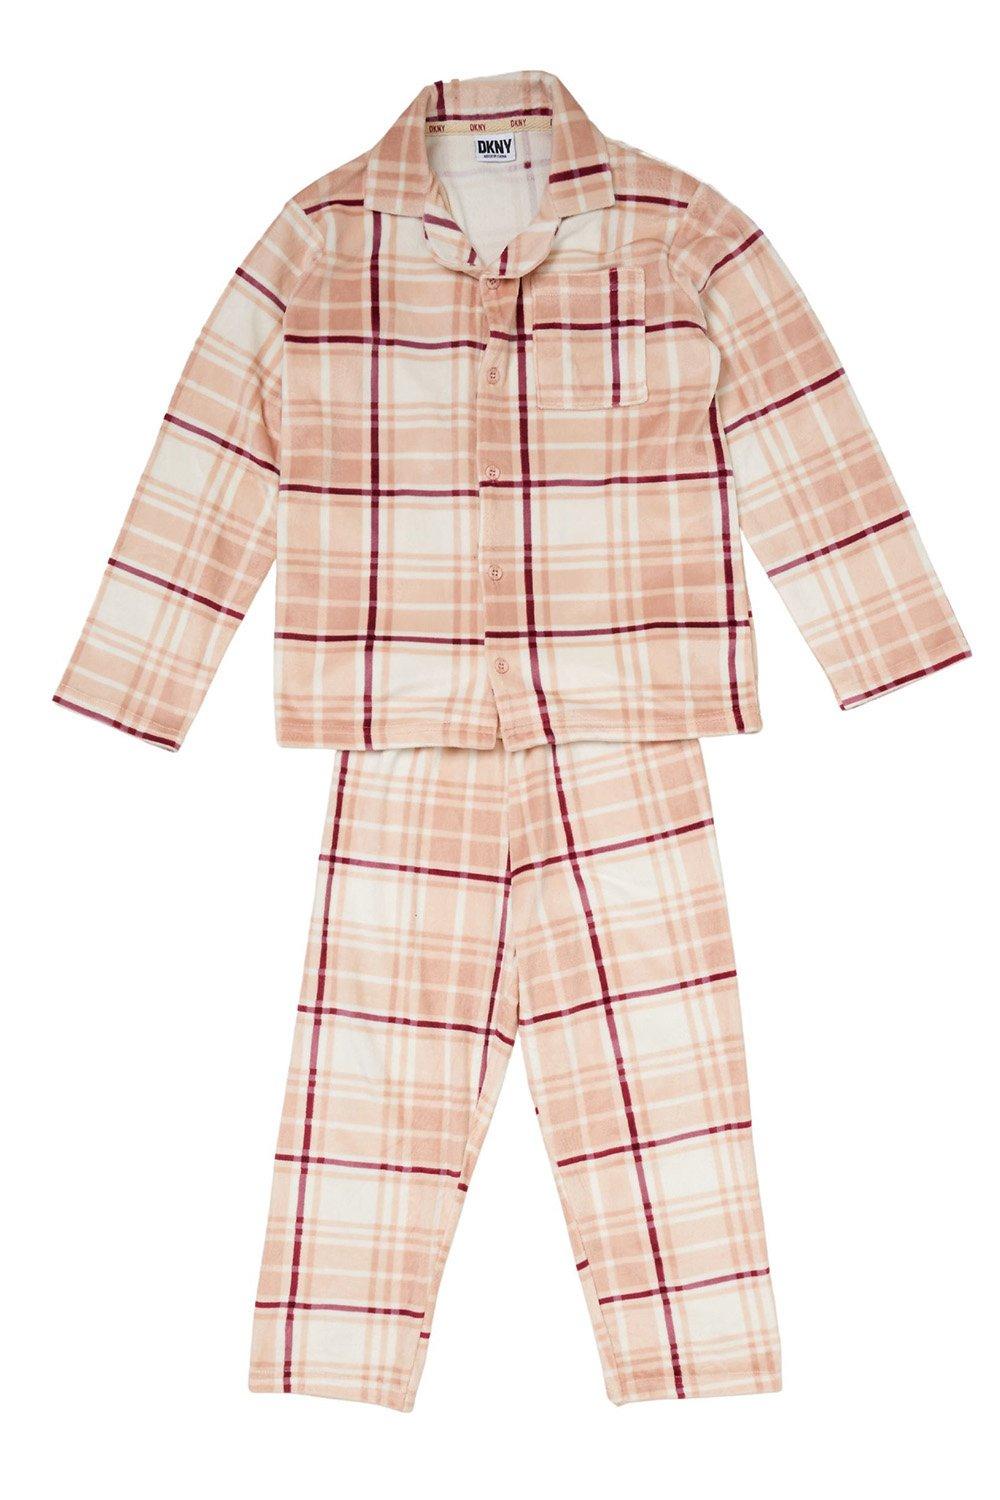 Пижамный комплект Minky для девочек, темно-розовая рубашка в клетку, низ для малышей, возраст 2–7 лет DKNY, розовый